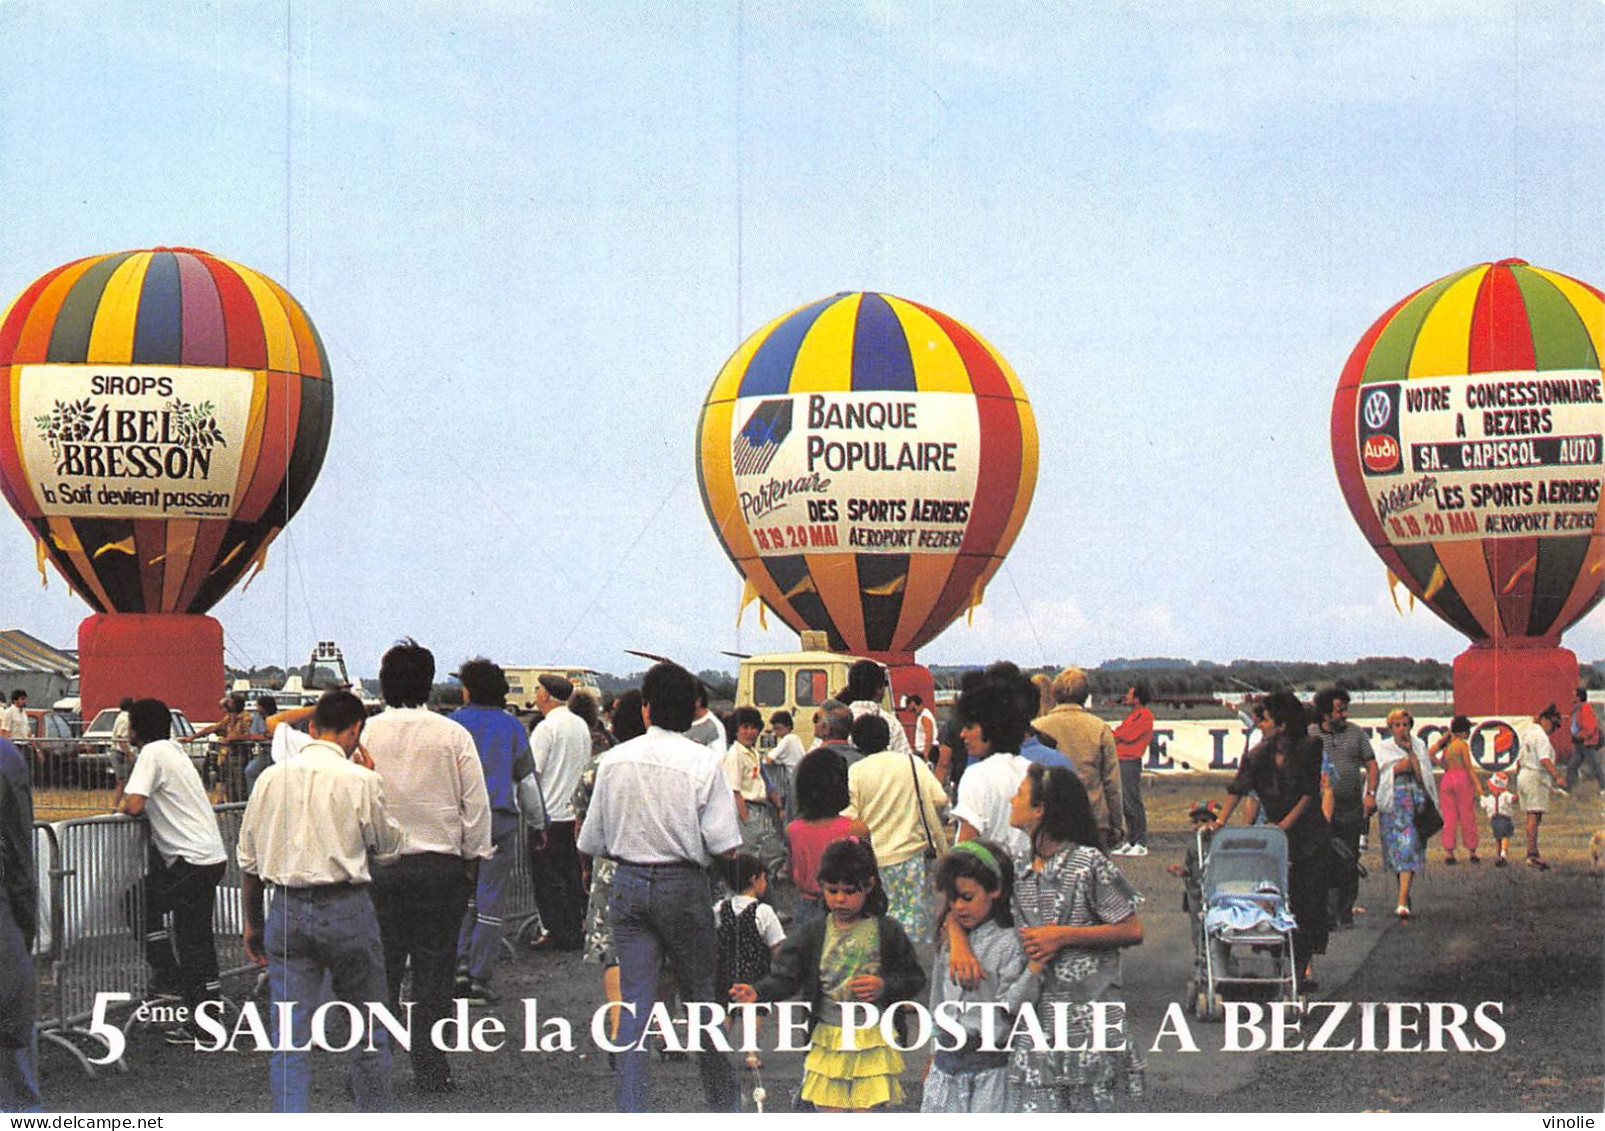 MO-24-363 : SALON DE BEZIERS. 5° BOURSE. 1991. MONTGOLFIERES - Sammlerbörsen & Sammlerausstellungen